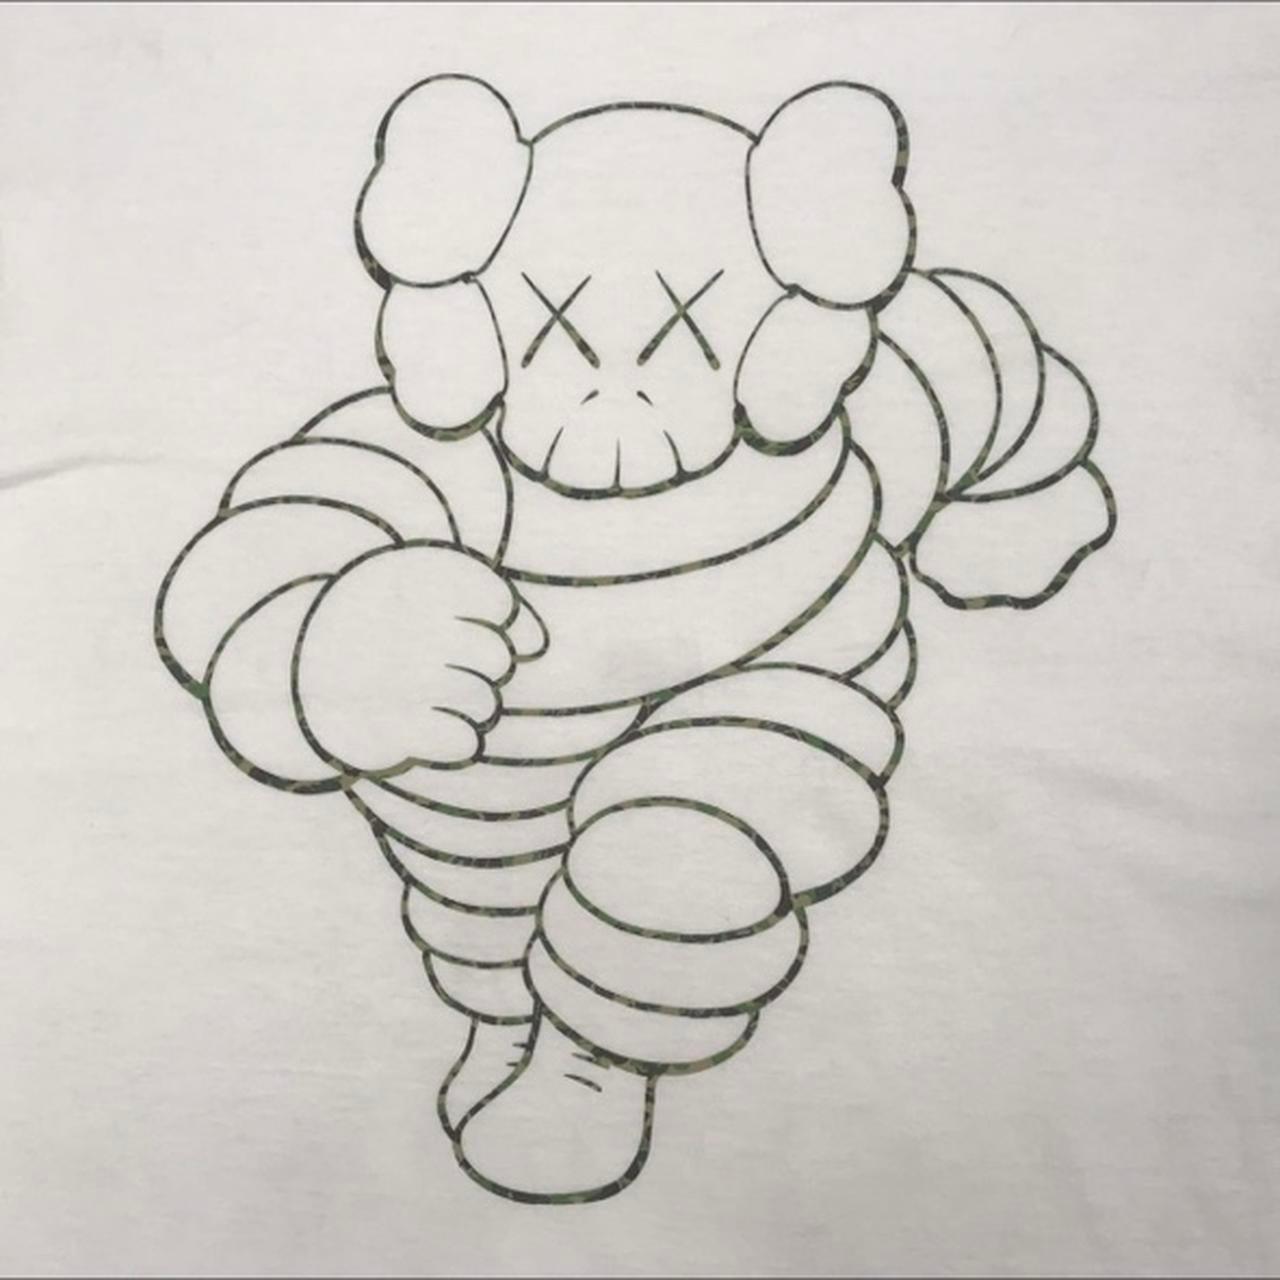 Kaws × BAPE Michelin Man chum T-shirt - Known Source